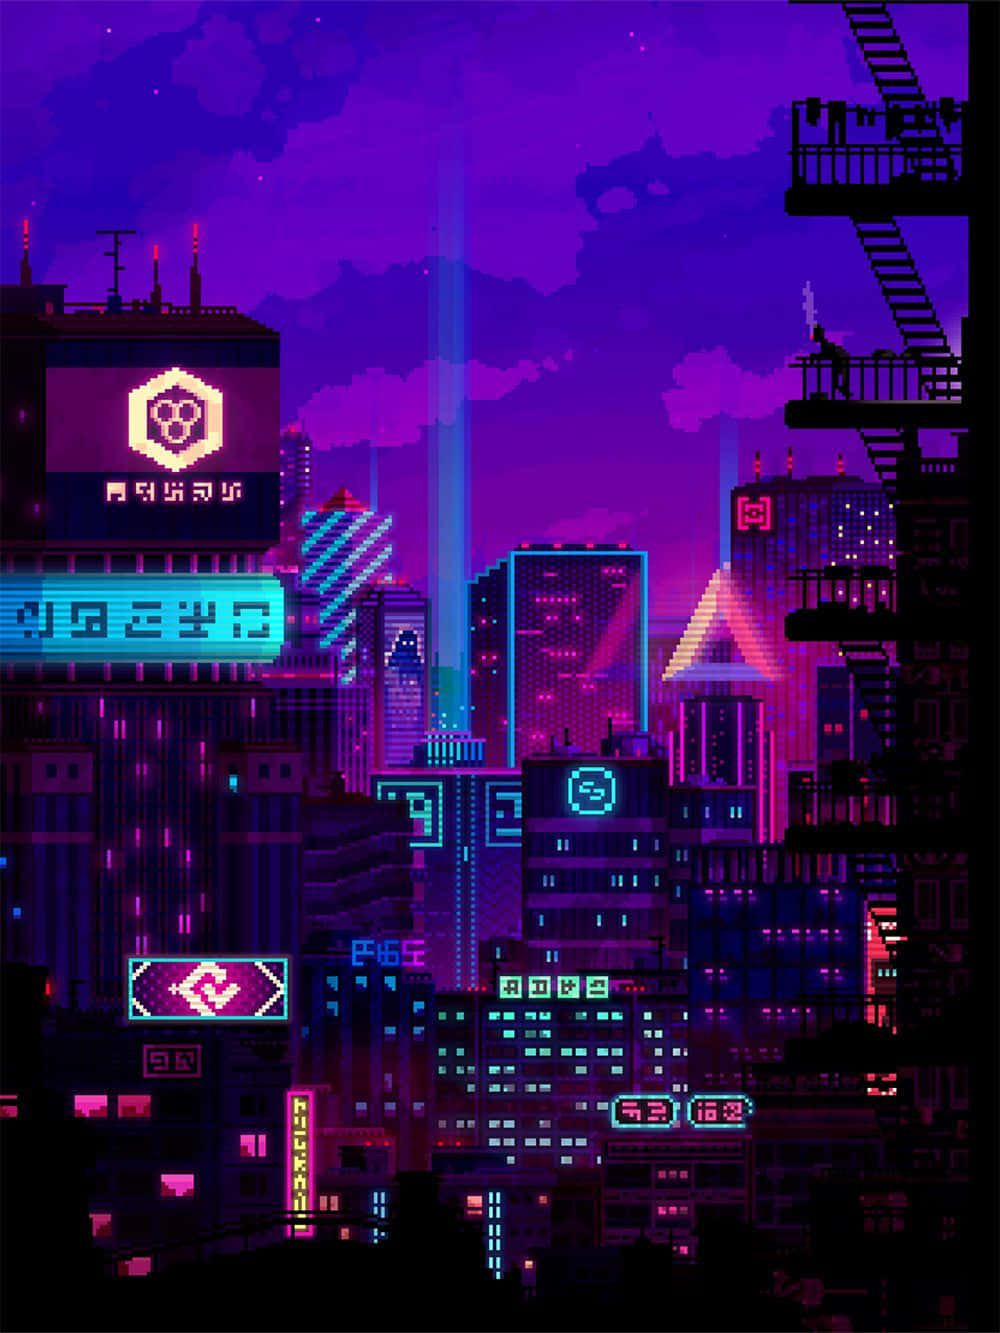 Utforskaen Dystopisk Cyberpunk-värld Genom Klassisk Pixelkonst. Wallpaper